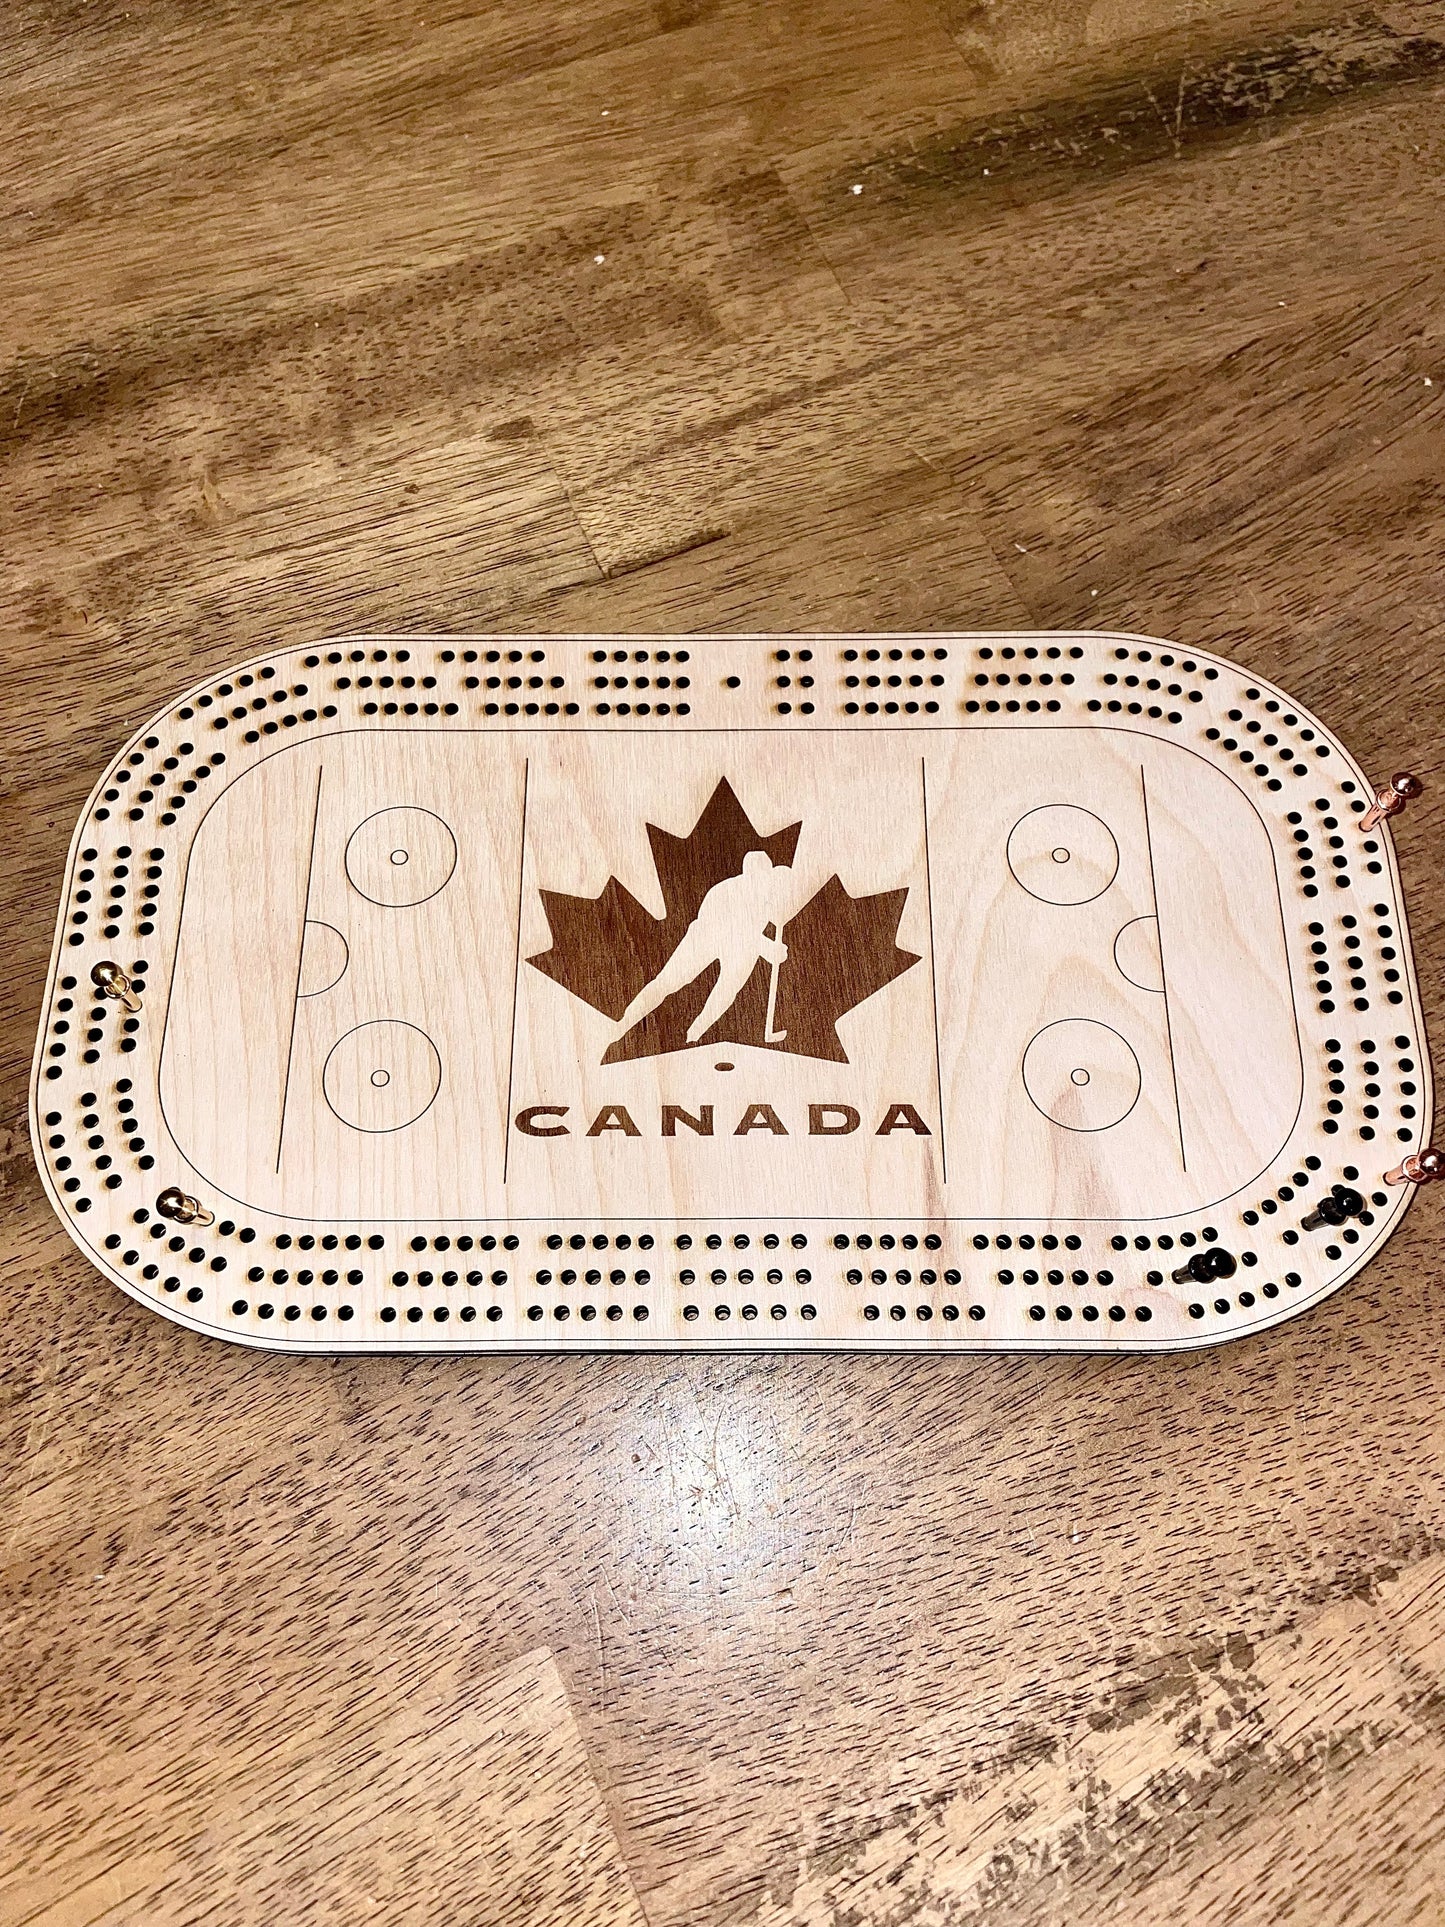 Tabla de cribbage del equipo de Canadá